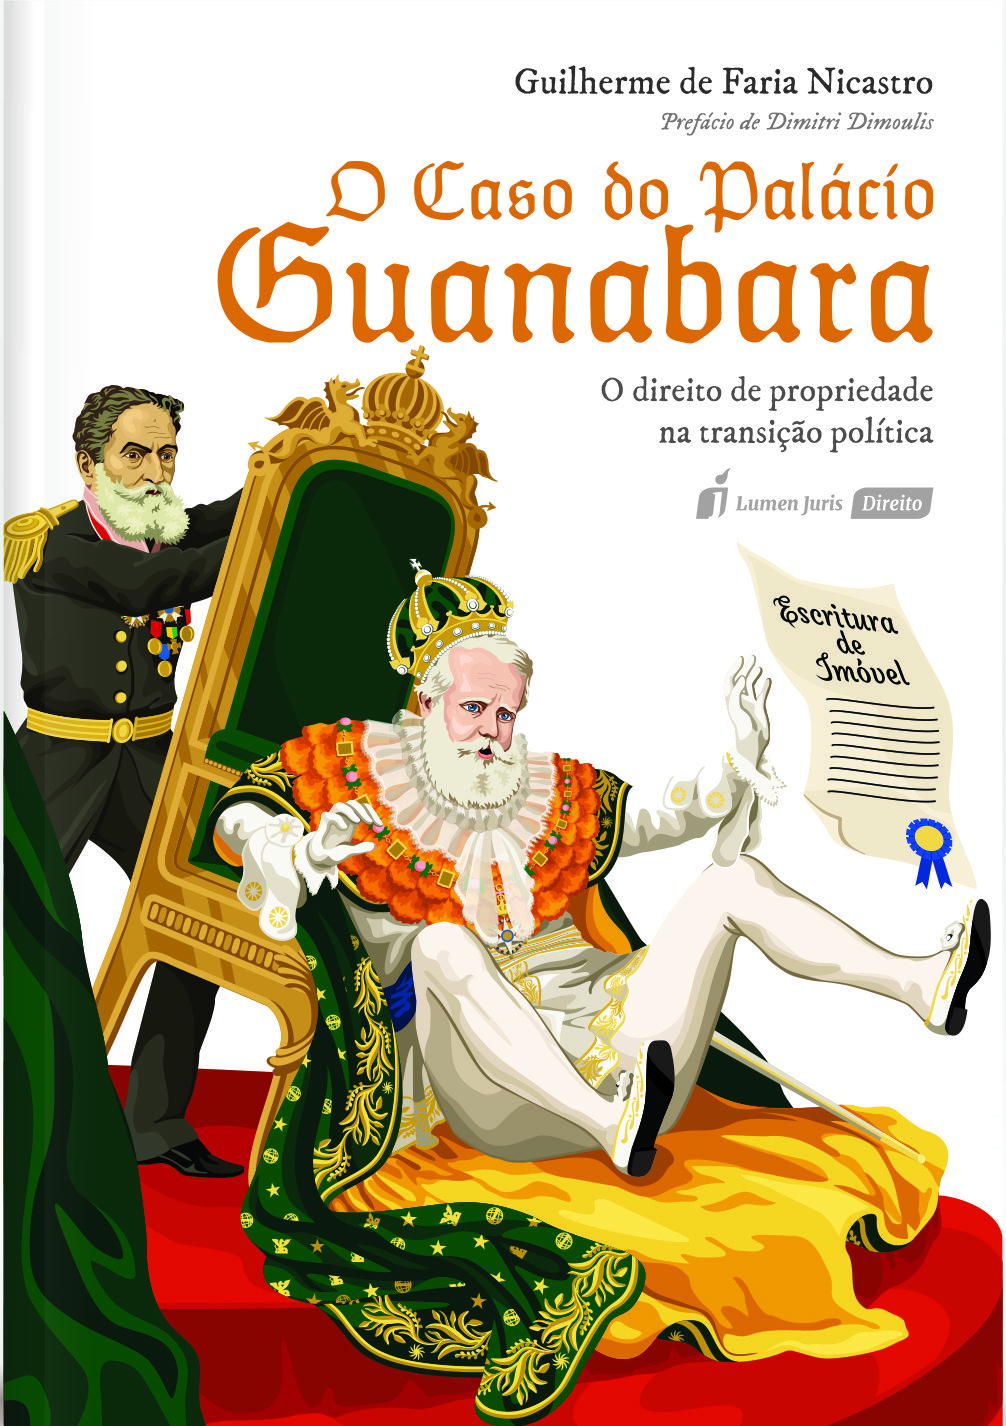 Portal Migalhas: Sorteio da obra “O Caso do Palácio Guanabara”